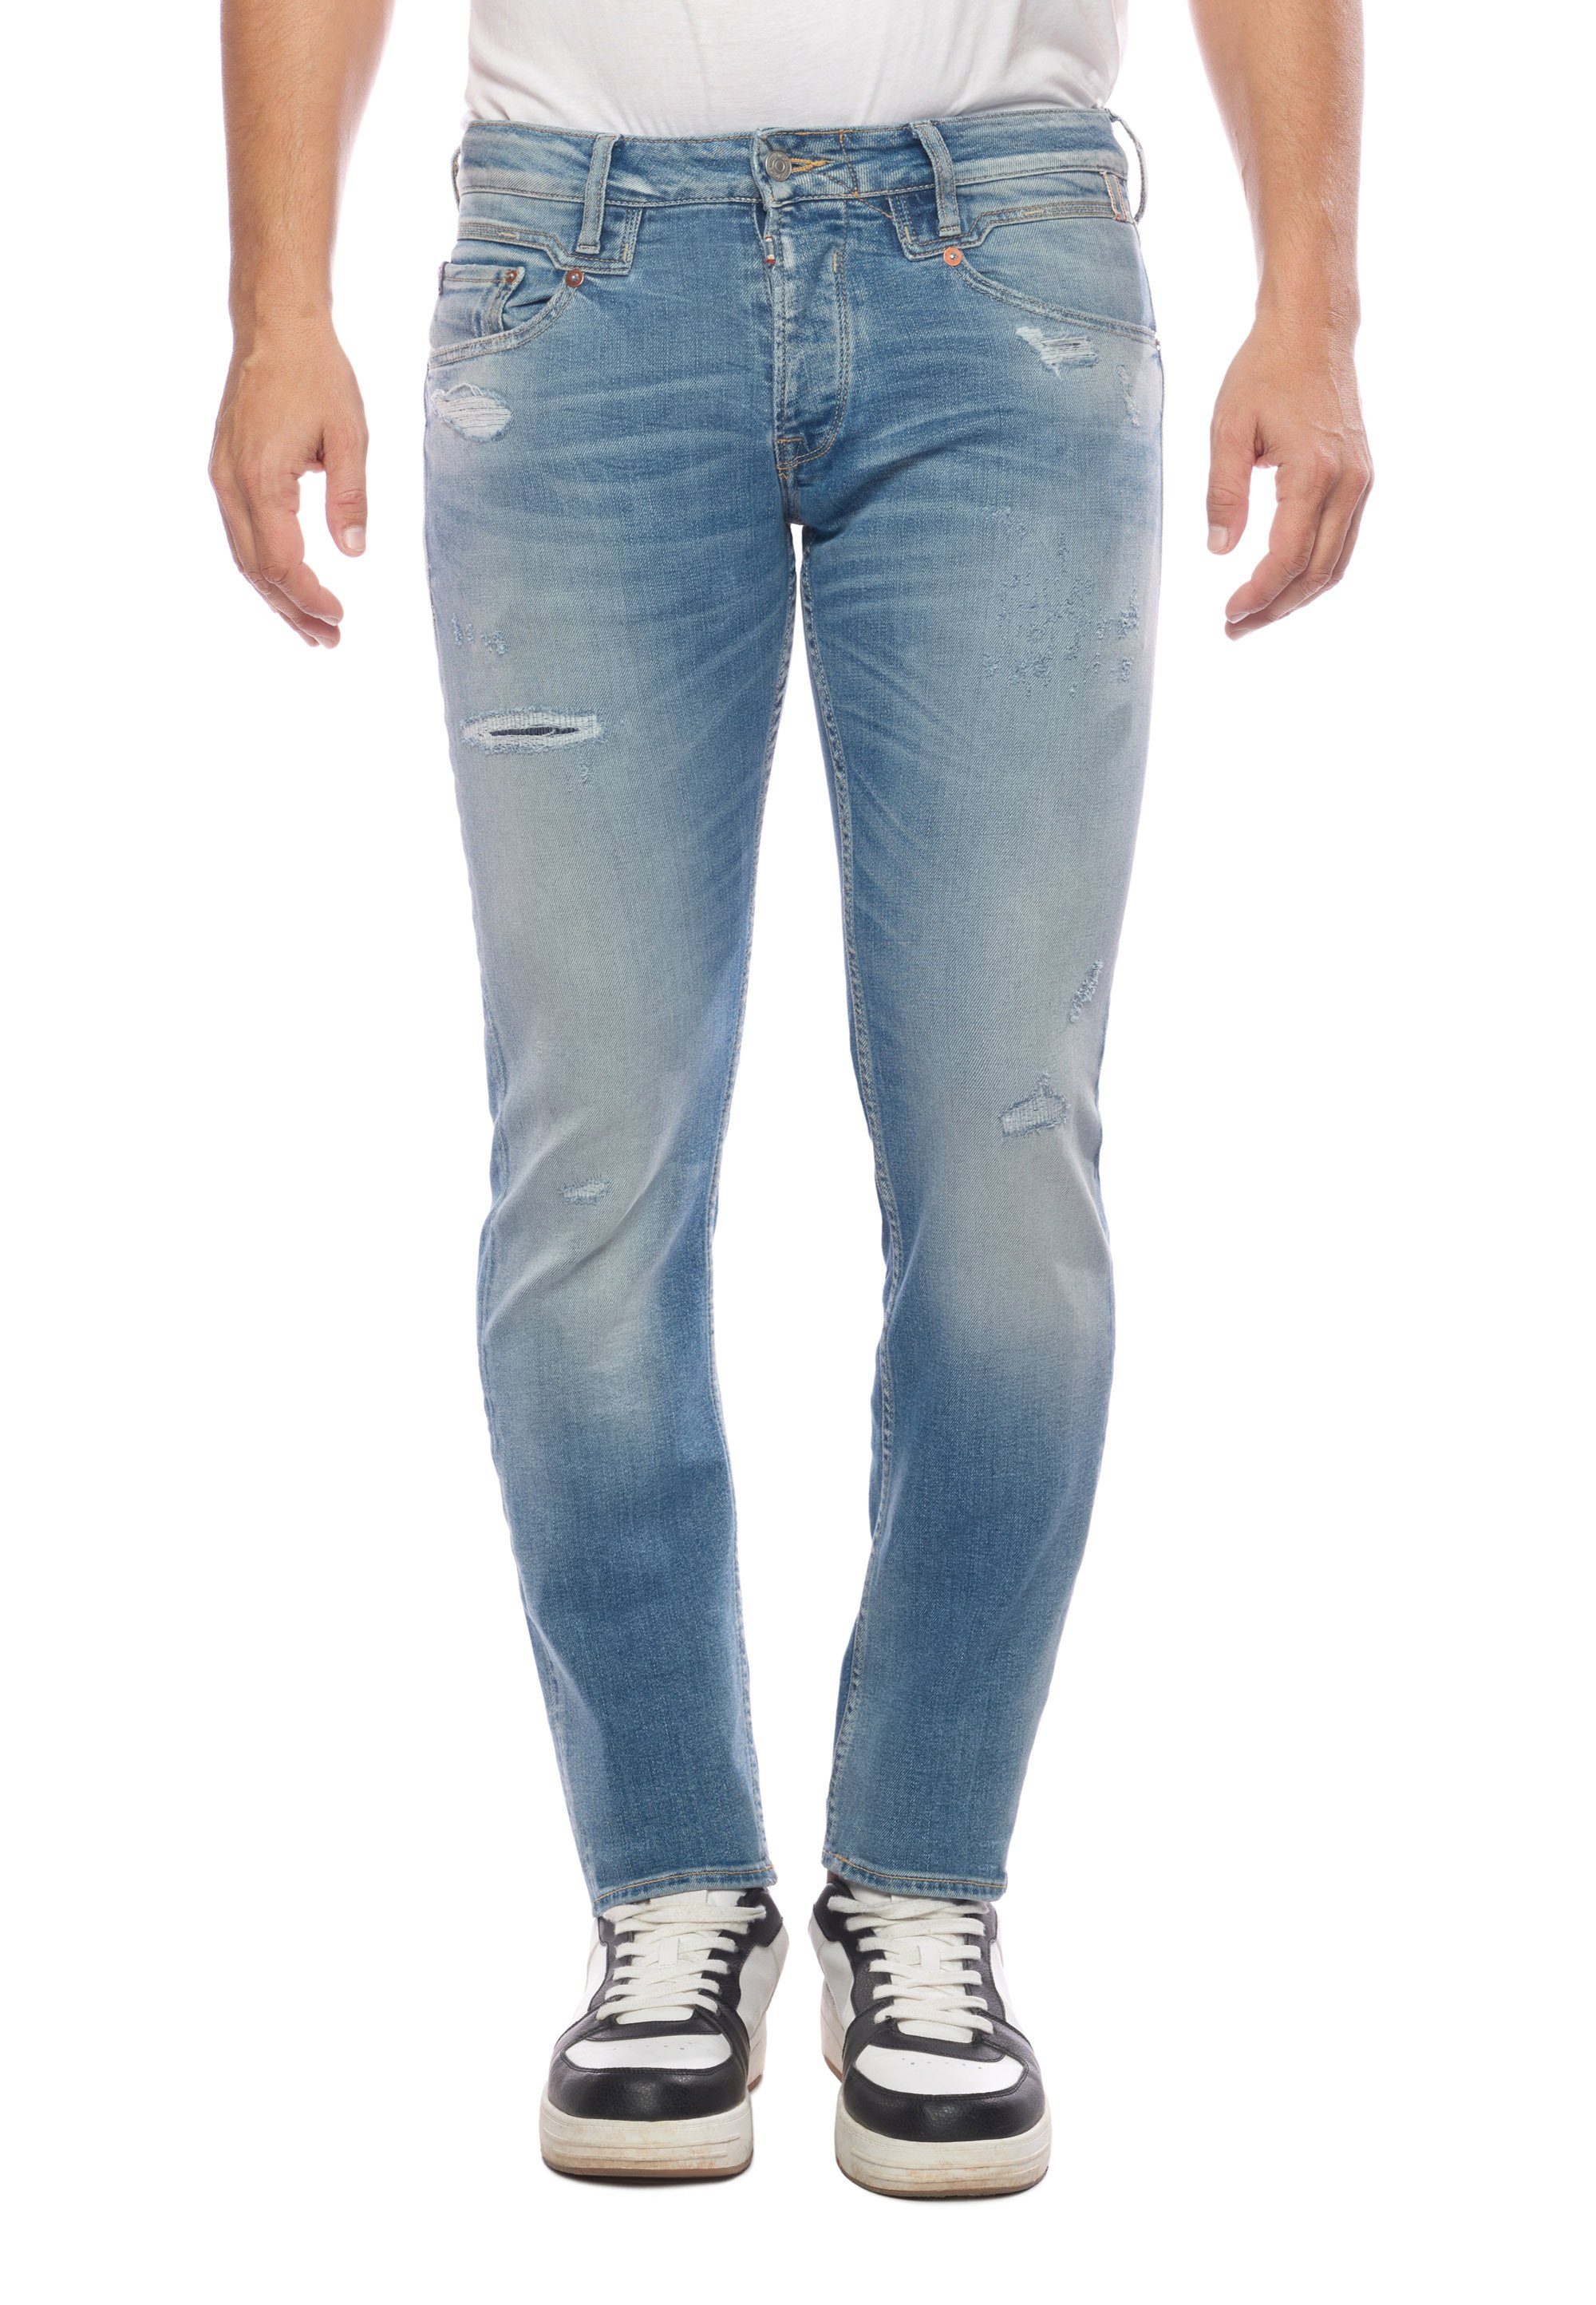 [Sorgfältig ausgewählte Produkte] Le Temps Des Slim-fit-Jeans Cerises trendigen Used-Details mit